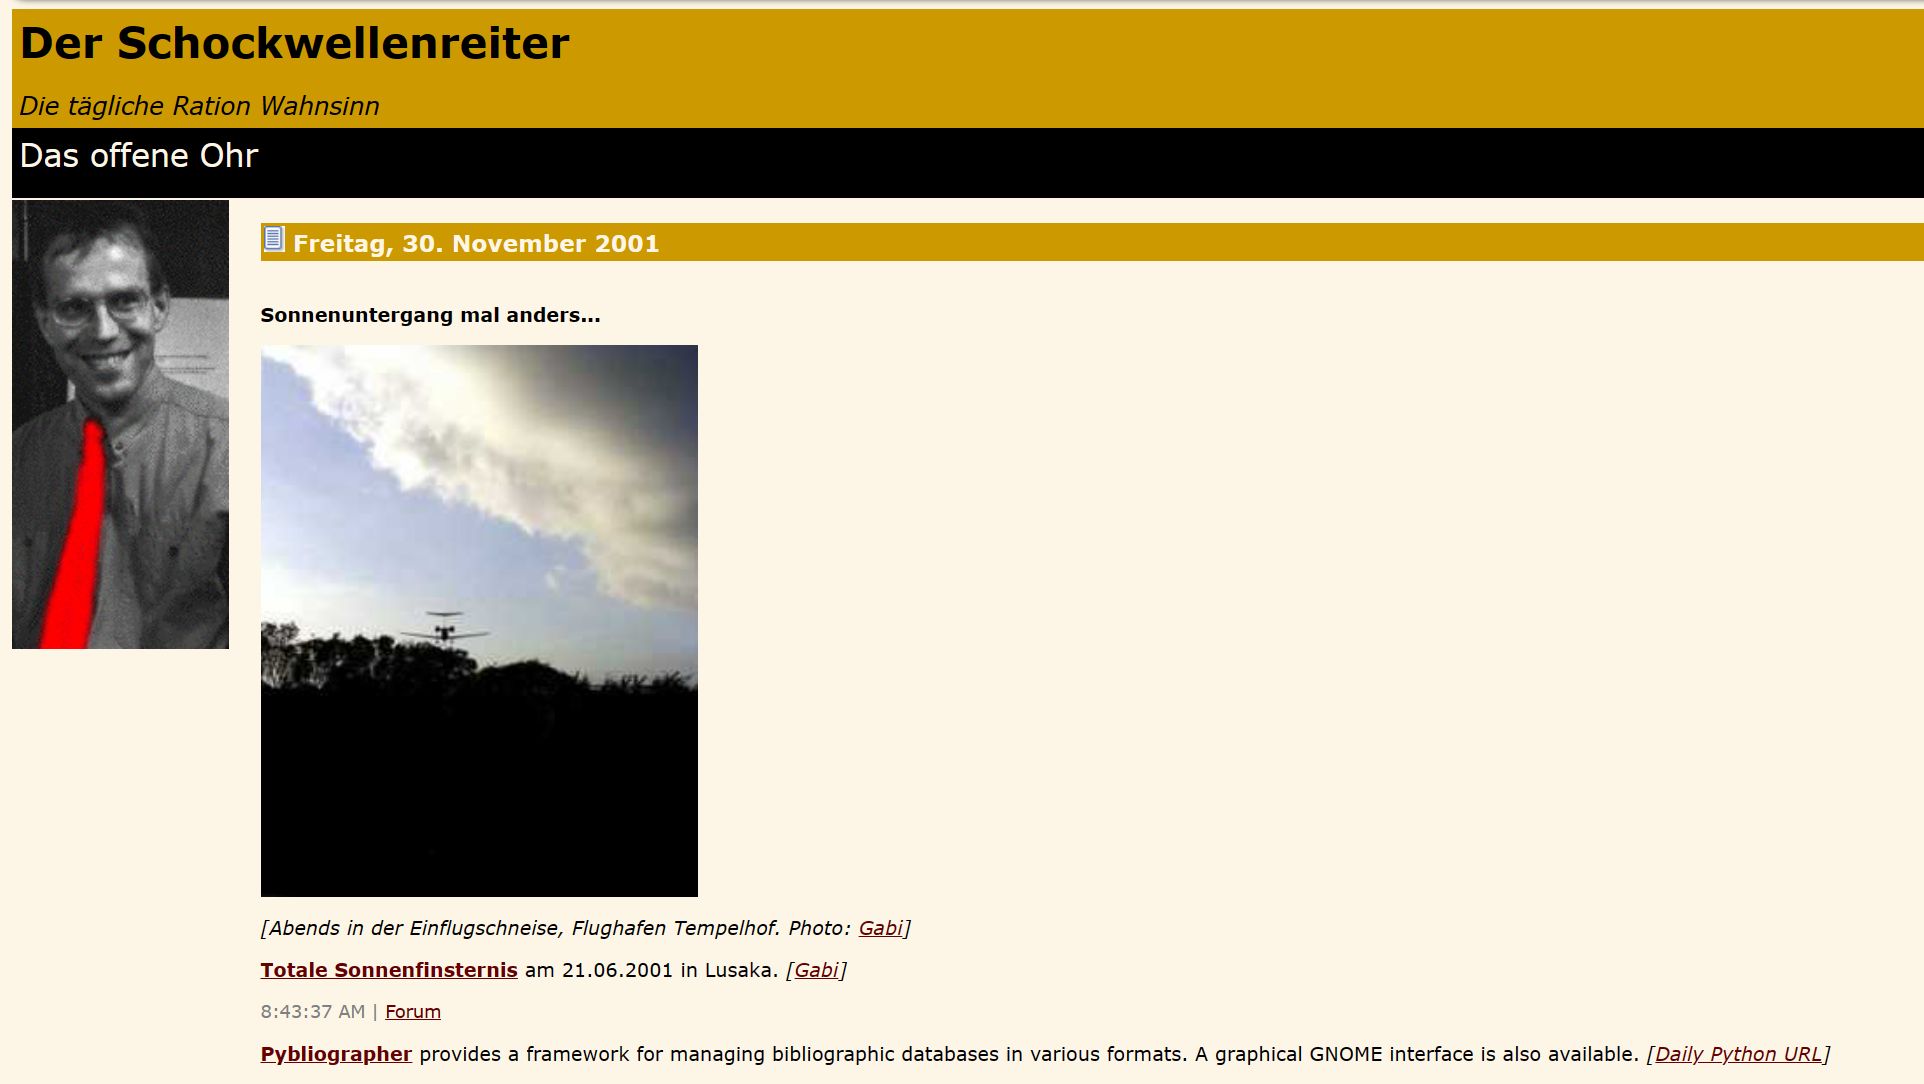 Der Schockwellenreiter - eine Legende unter den deutschsprachigen Blogs (Screenshot)